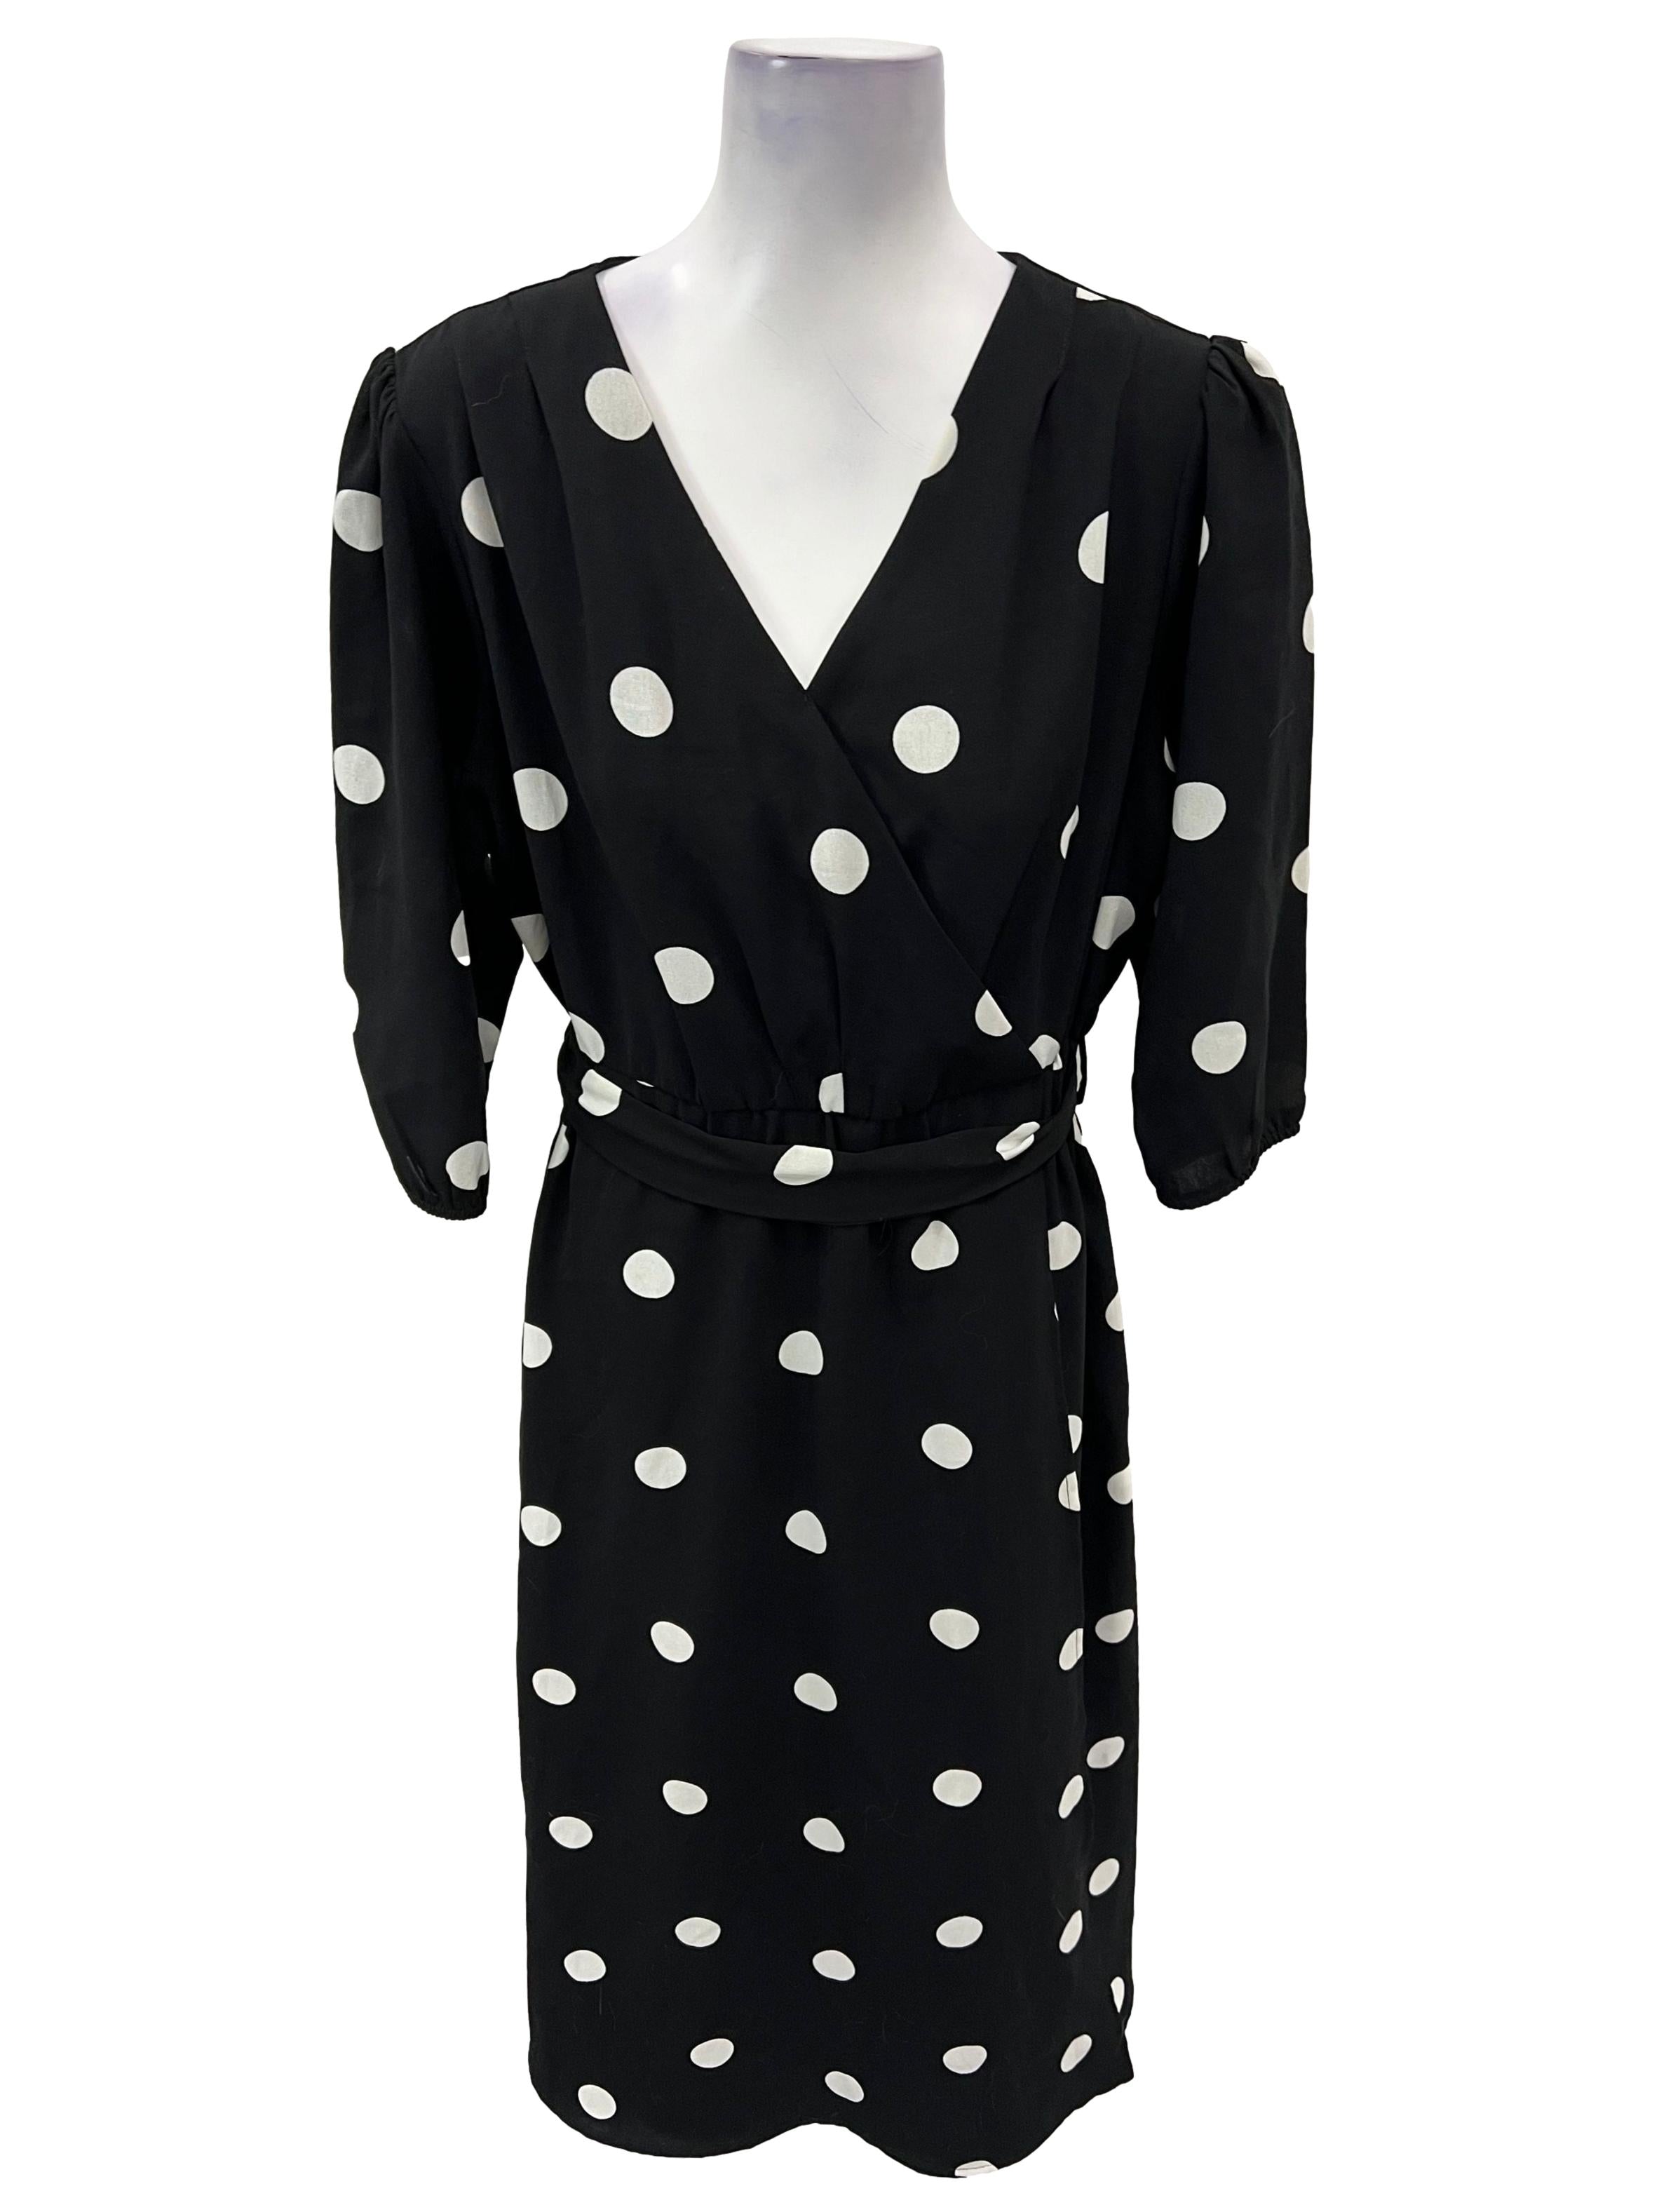 Black Polka Dot Overlap Dress